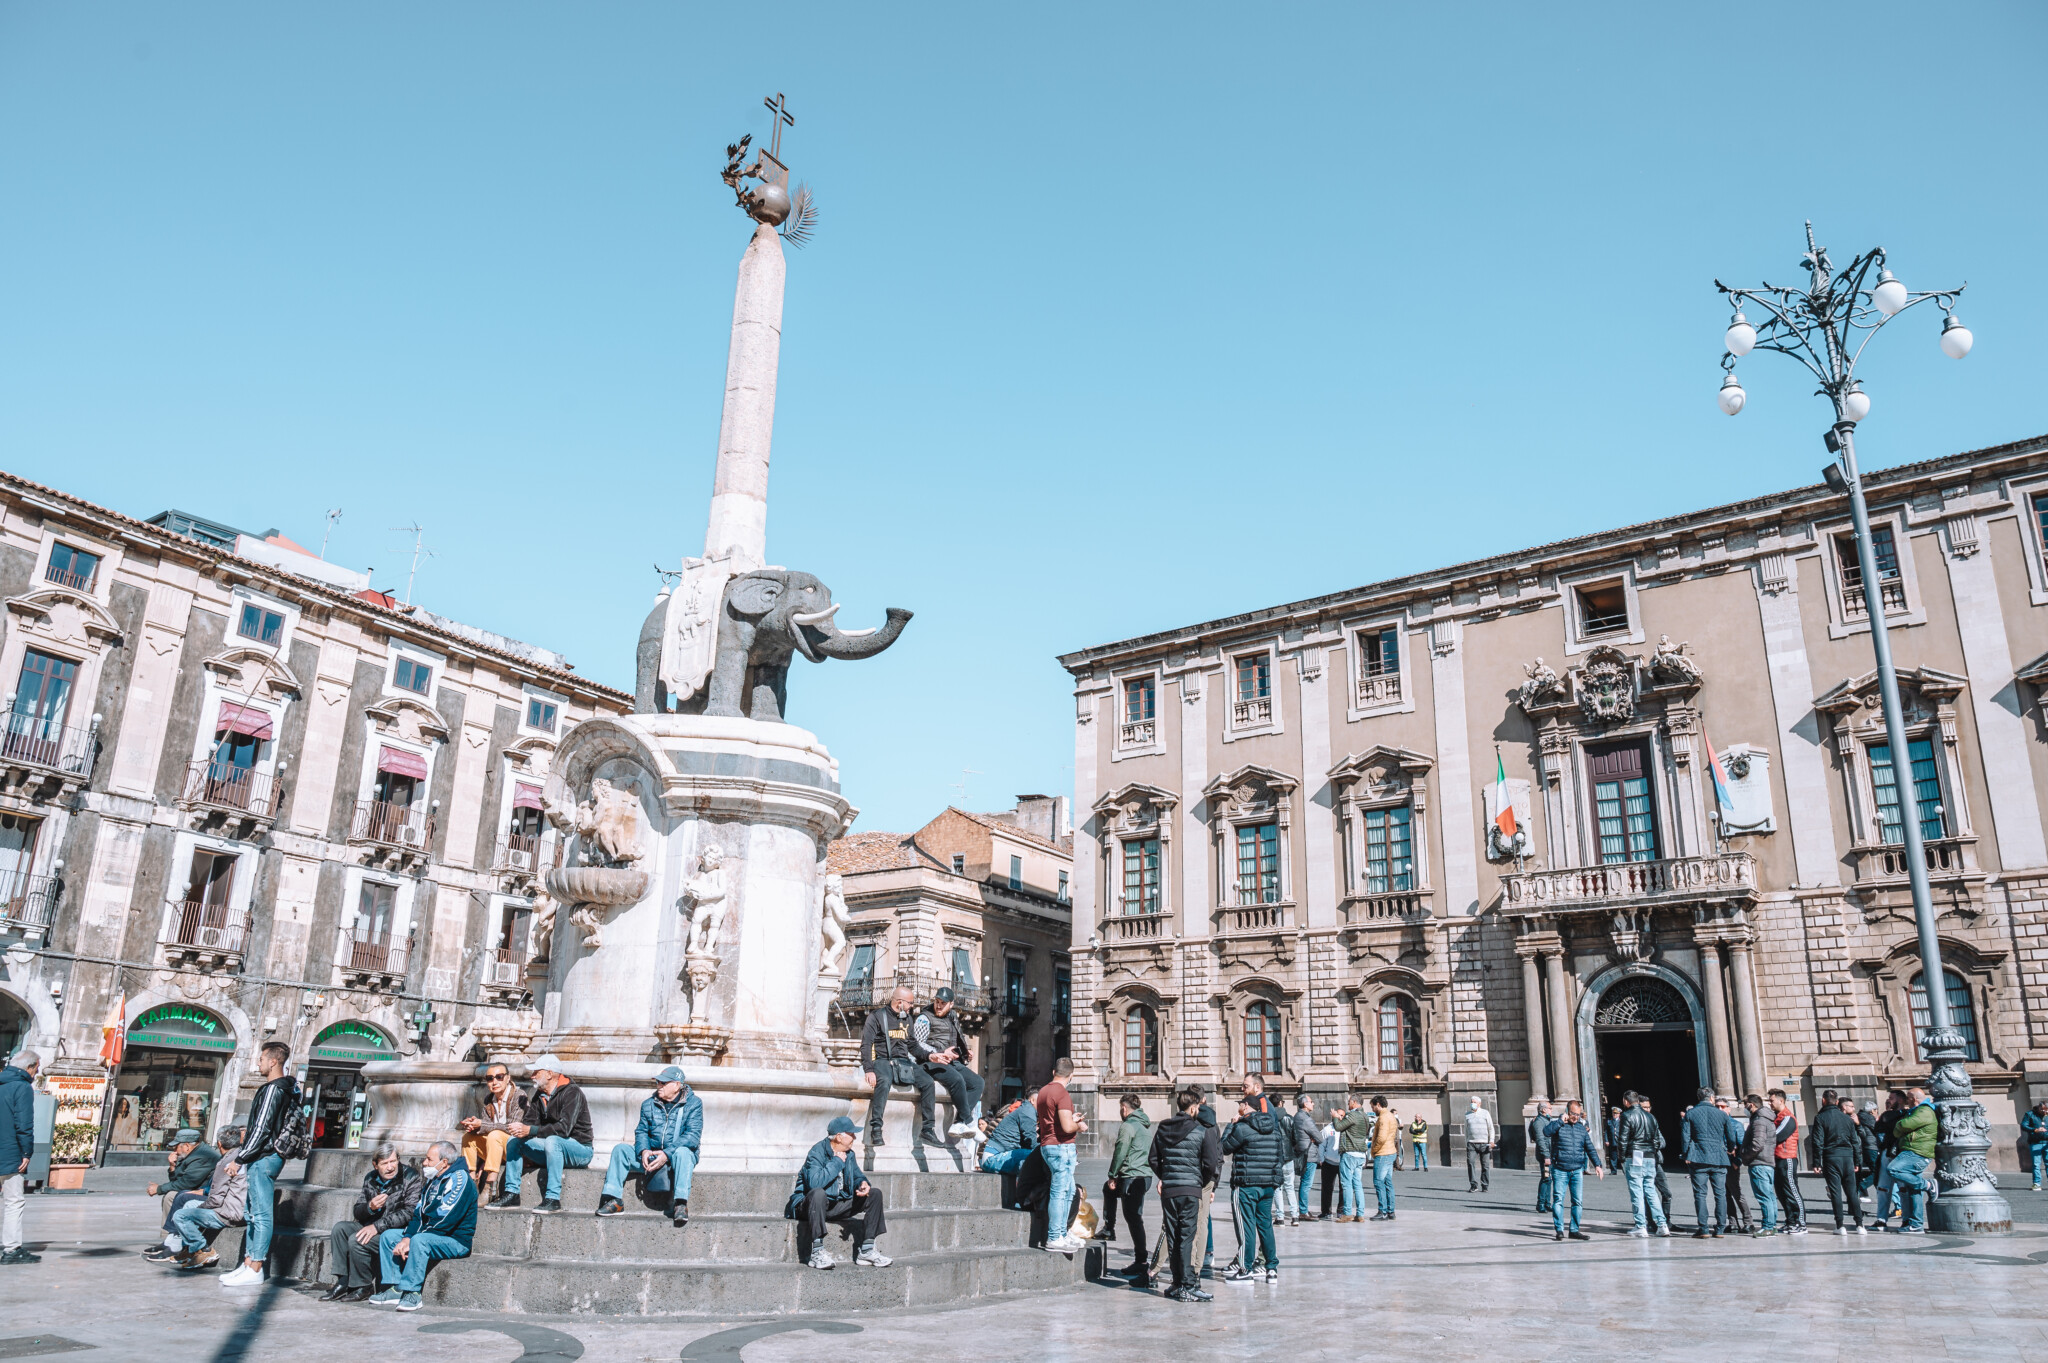 Der Elefantenbrunnen Fontana Dell’Elefante ist eine der beliebtesten Sehenswürdigkeiten in Catania